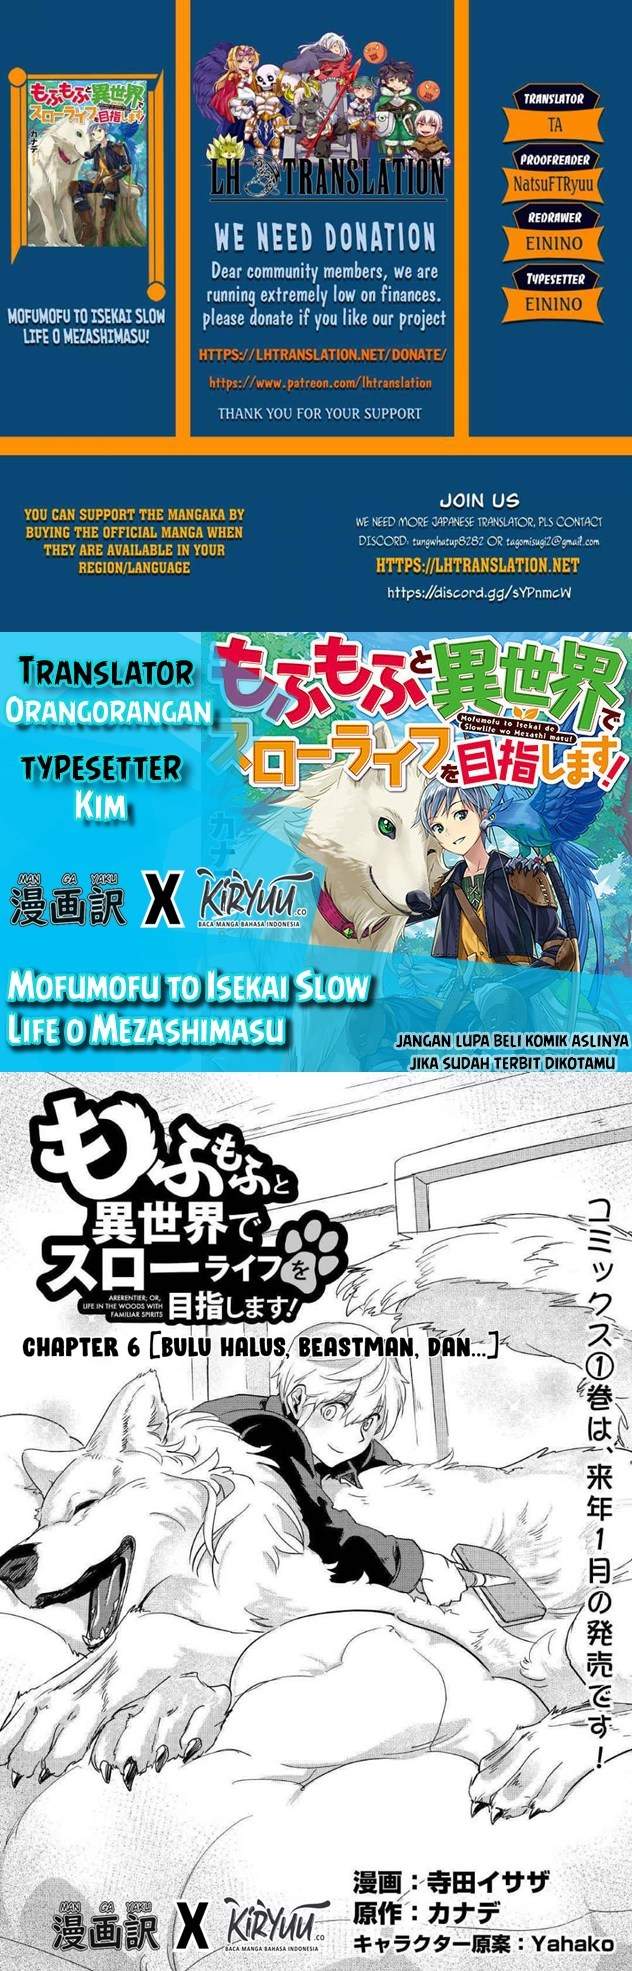 Mofumofu To Isekai Slow Life O Mezashimasu! Chapter 06 - 301